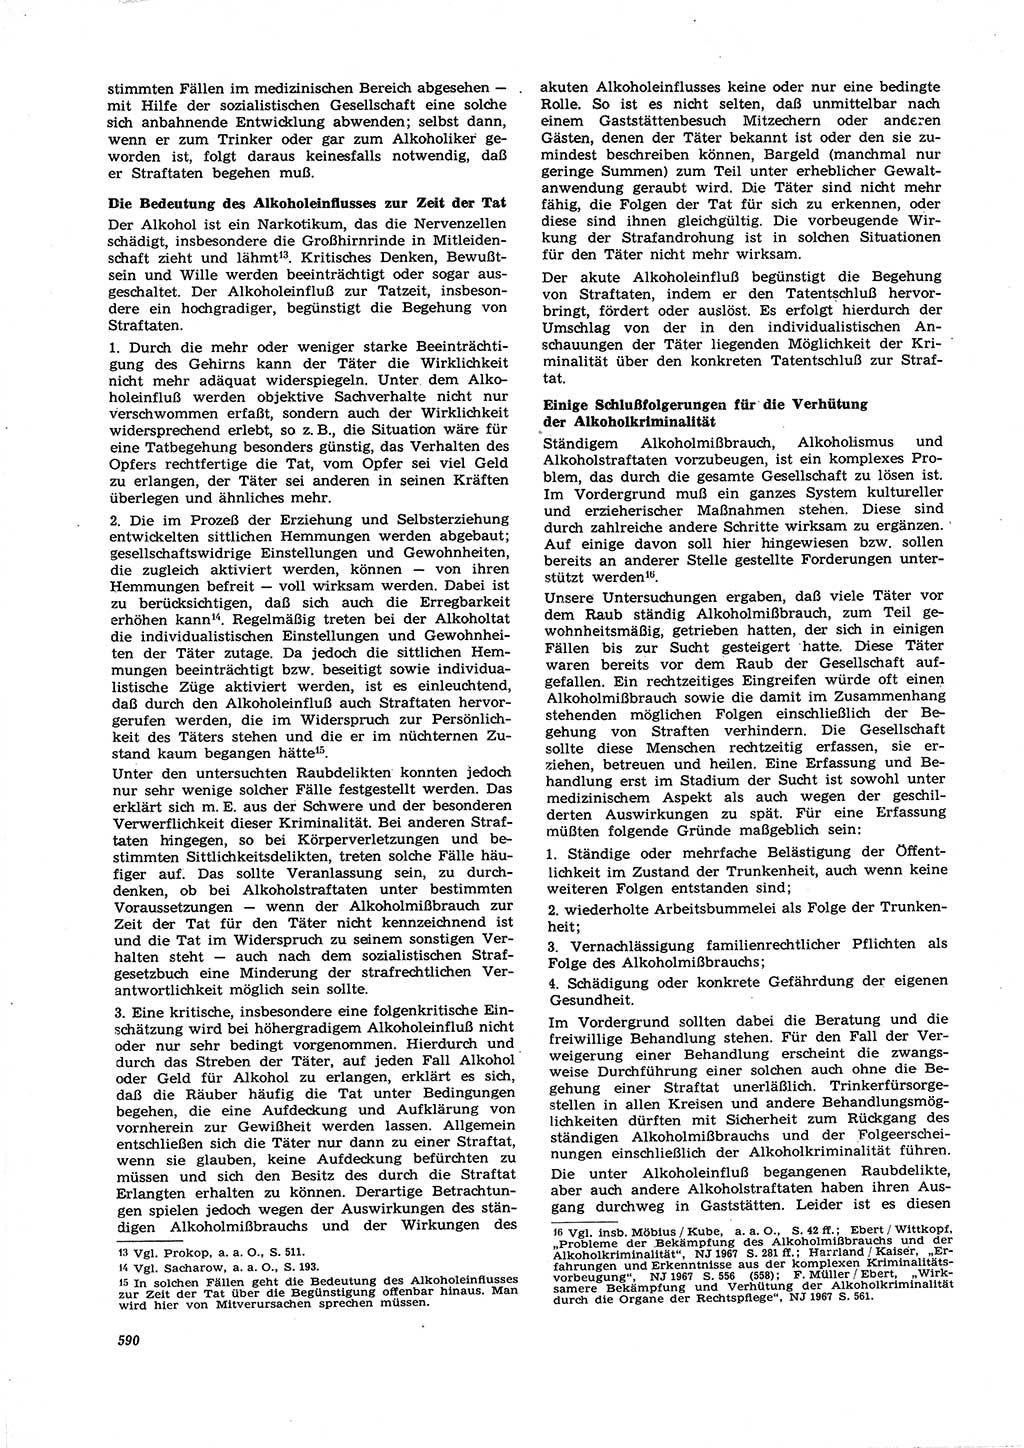 Neue Justiz (NJ), Zeitschrift für Recht und Rechtswissenschaft [Deutsche Demokratische Republik (DDR)], 21. Jahrgang 1967, Seite 590 (NJ DDR 1967, S. 590)